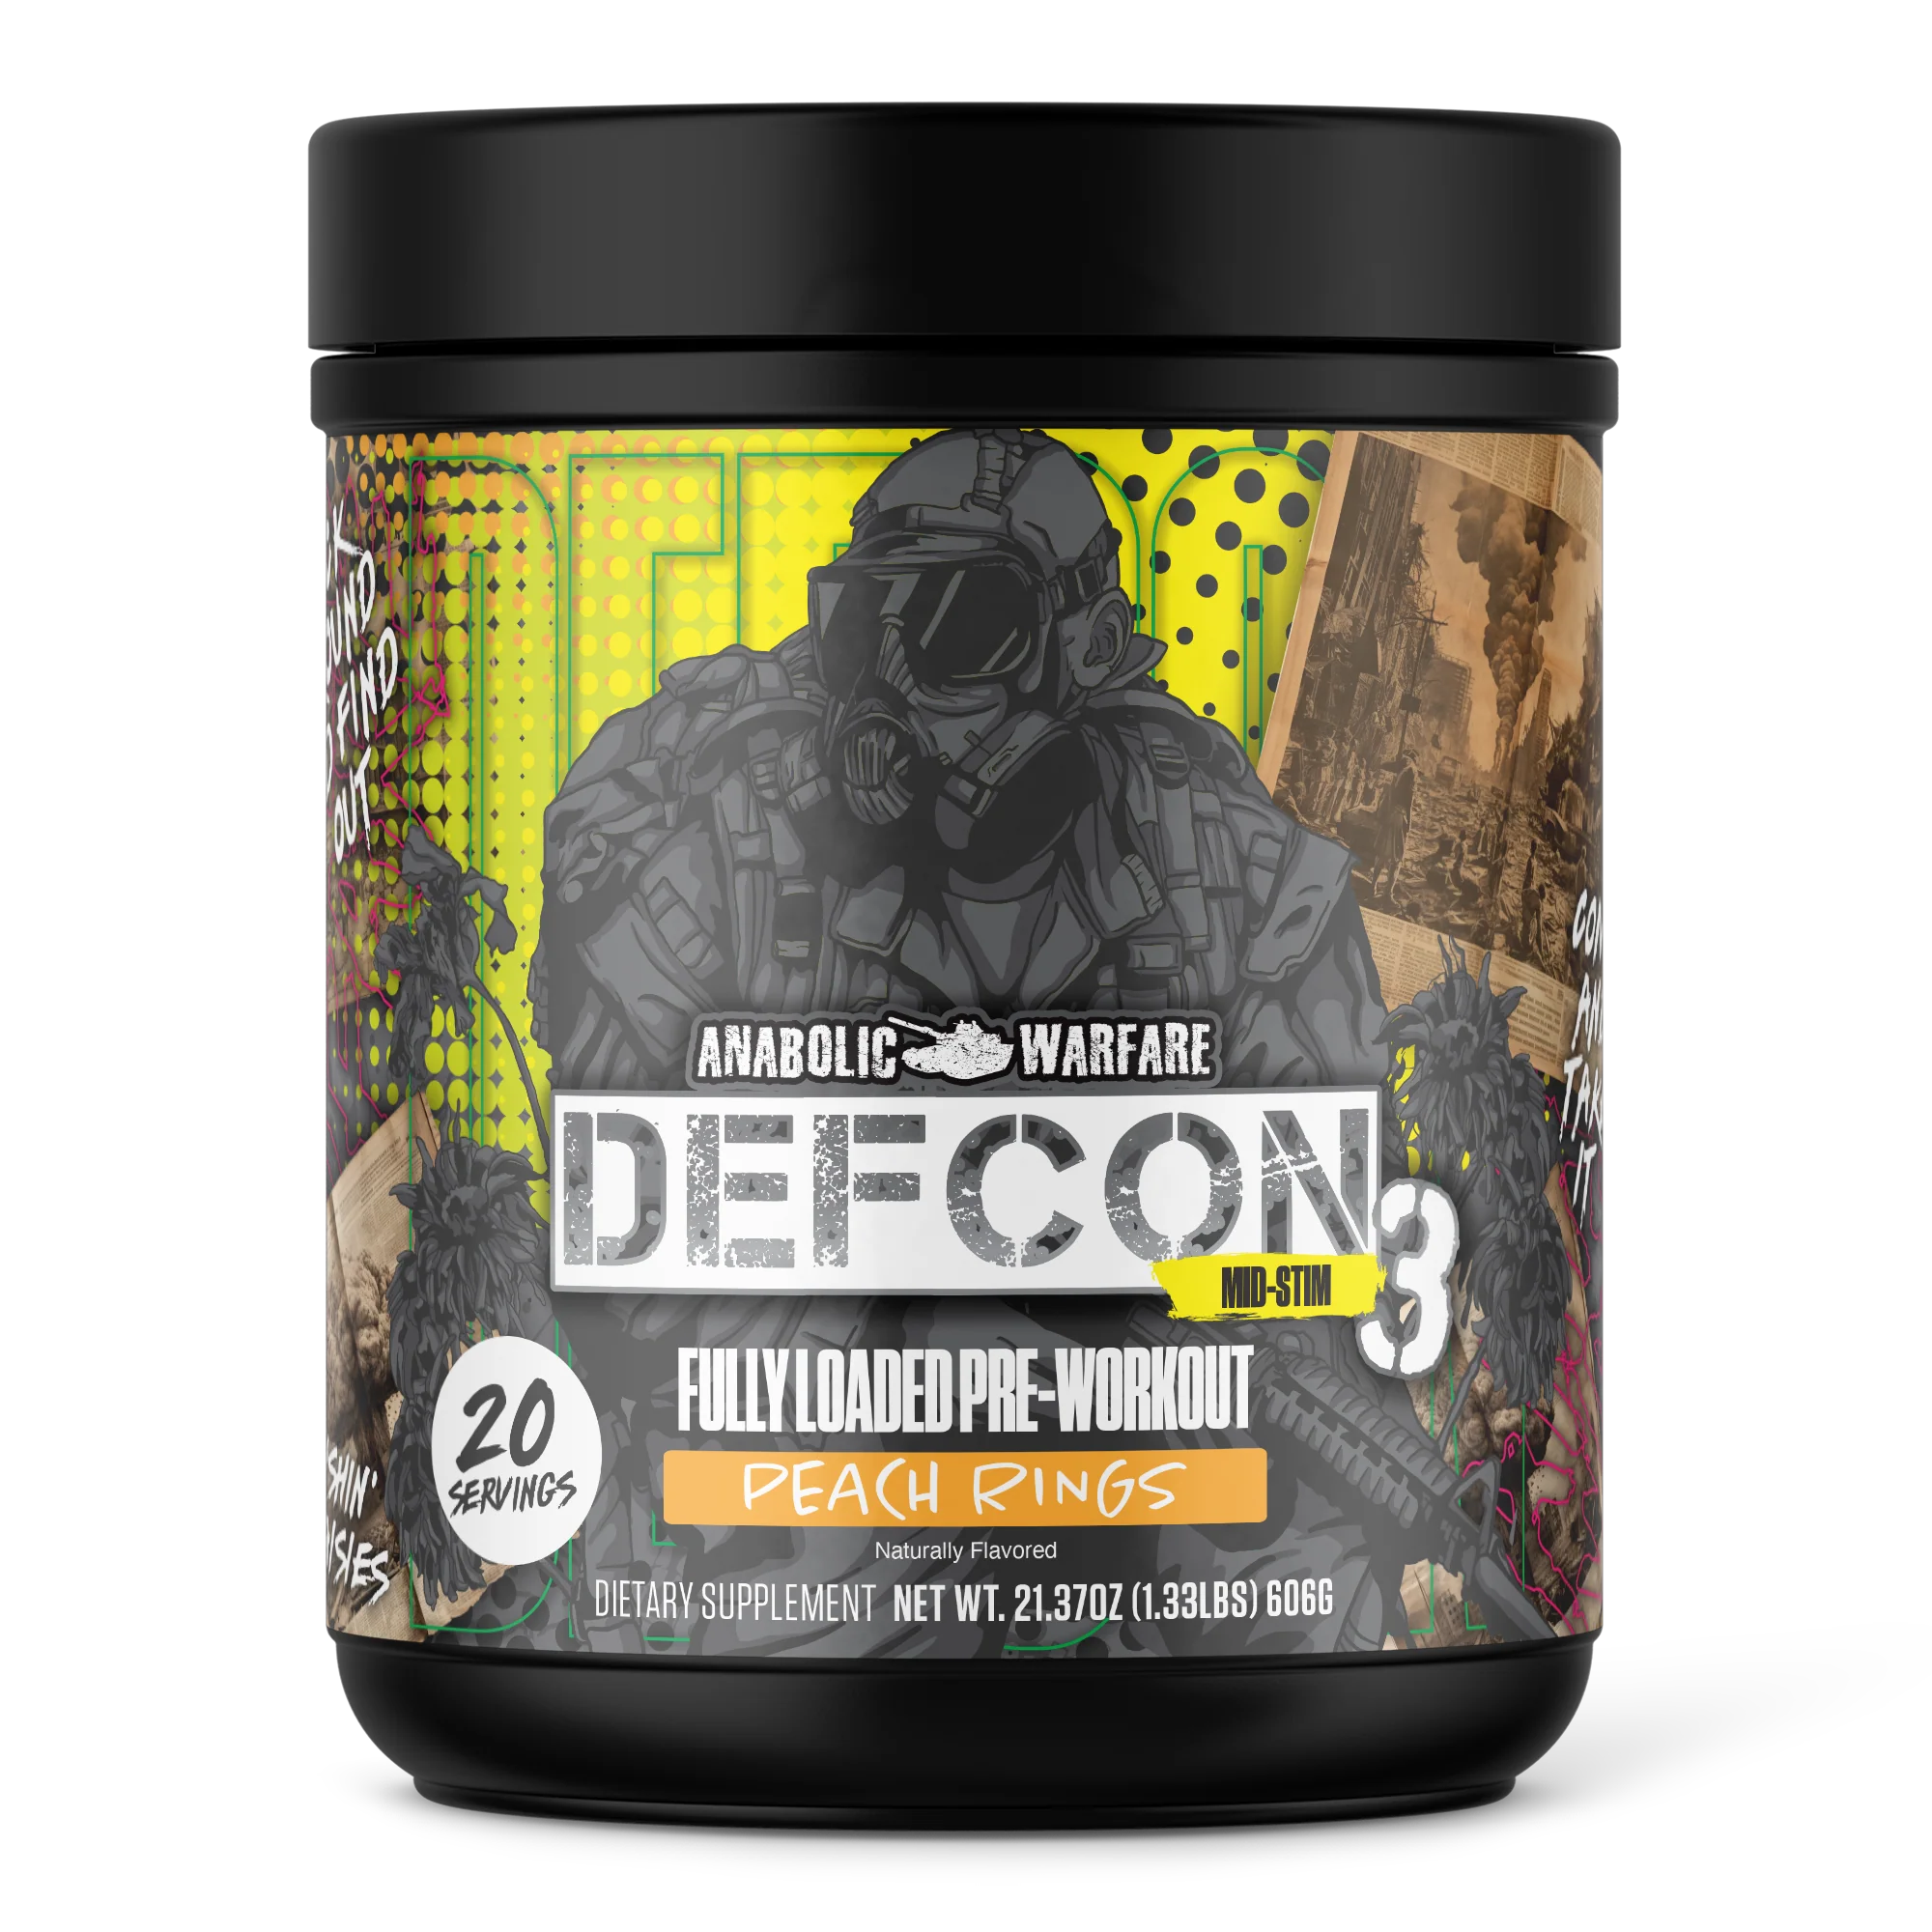 Anabolic Warfare DEFCON3 - Bemoxie Supplements